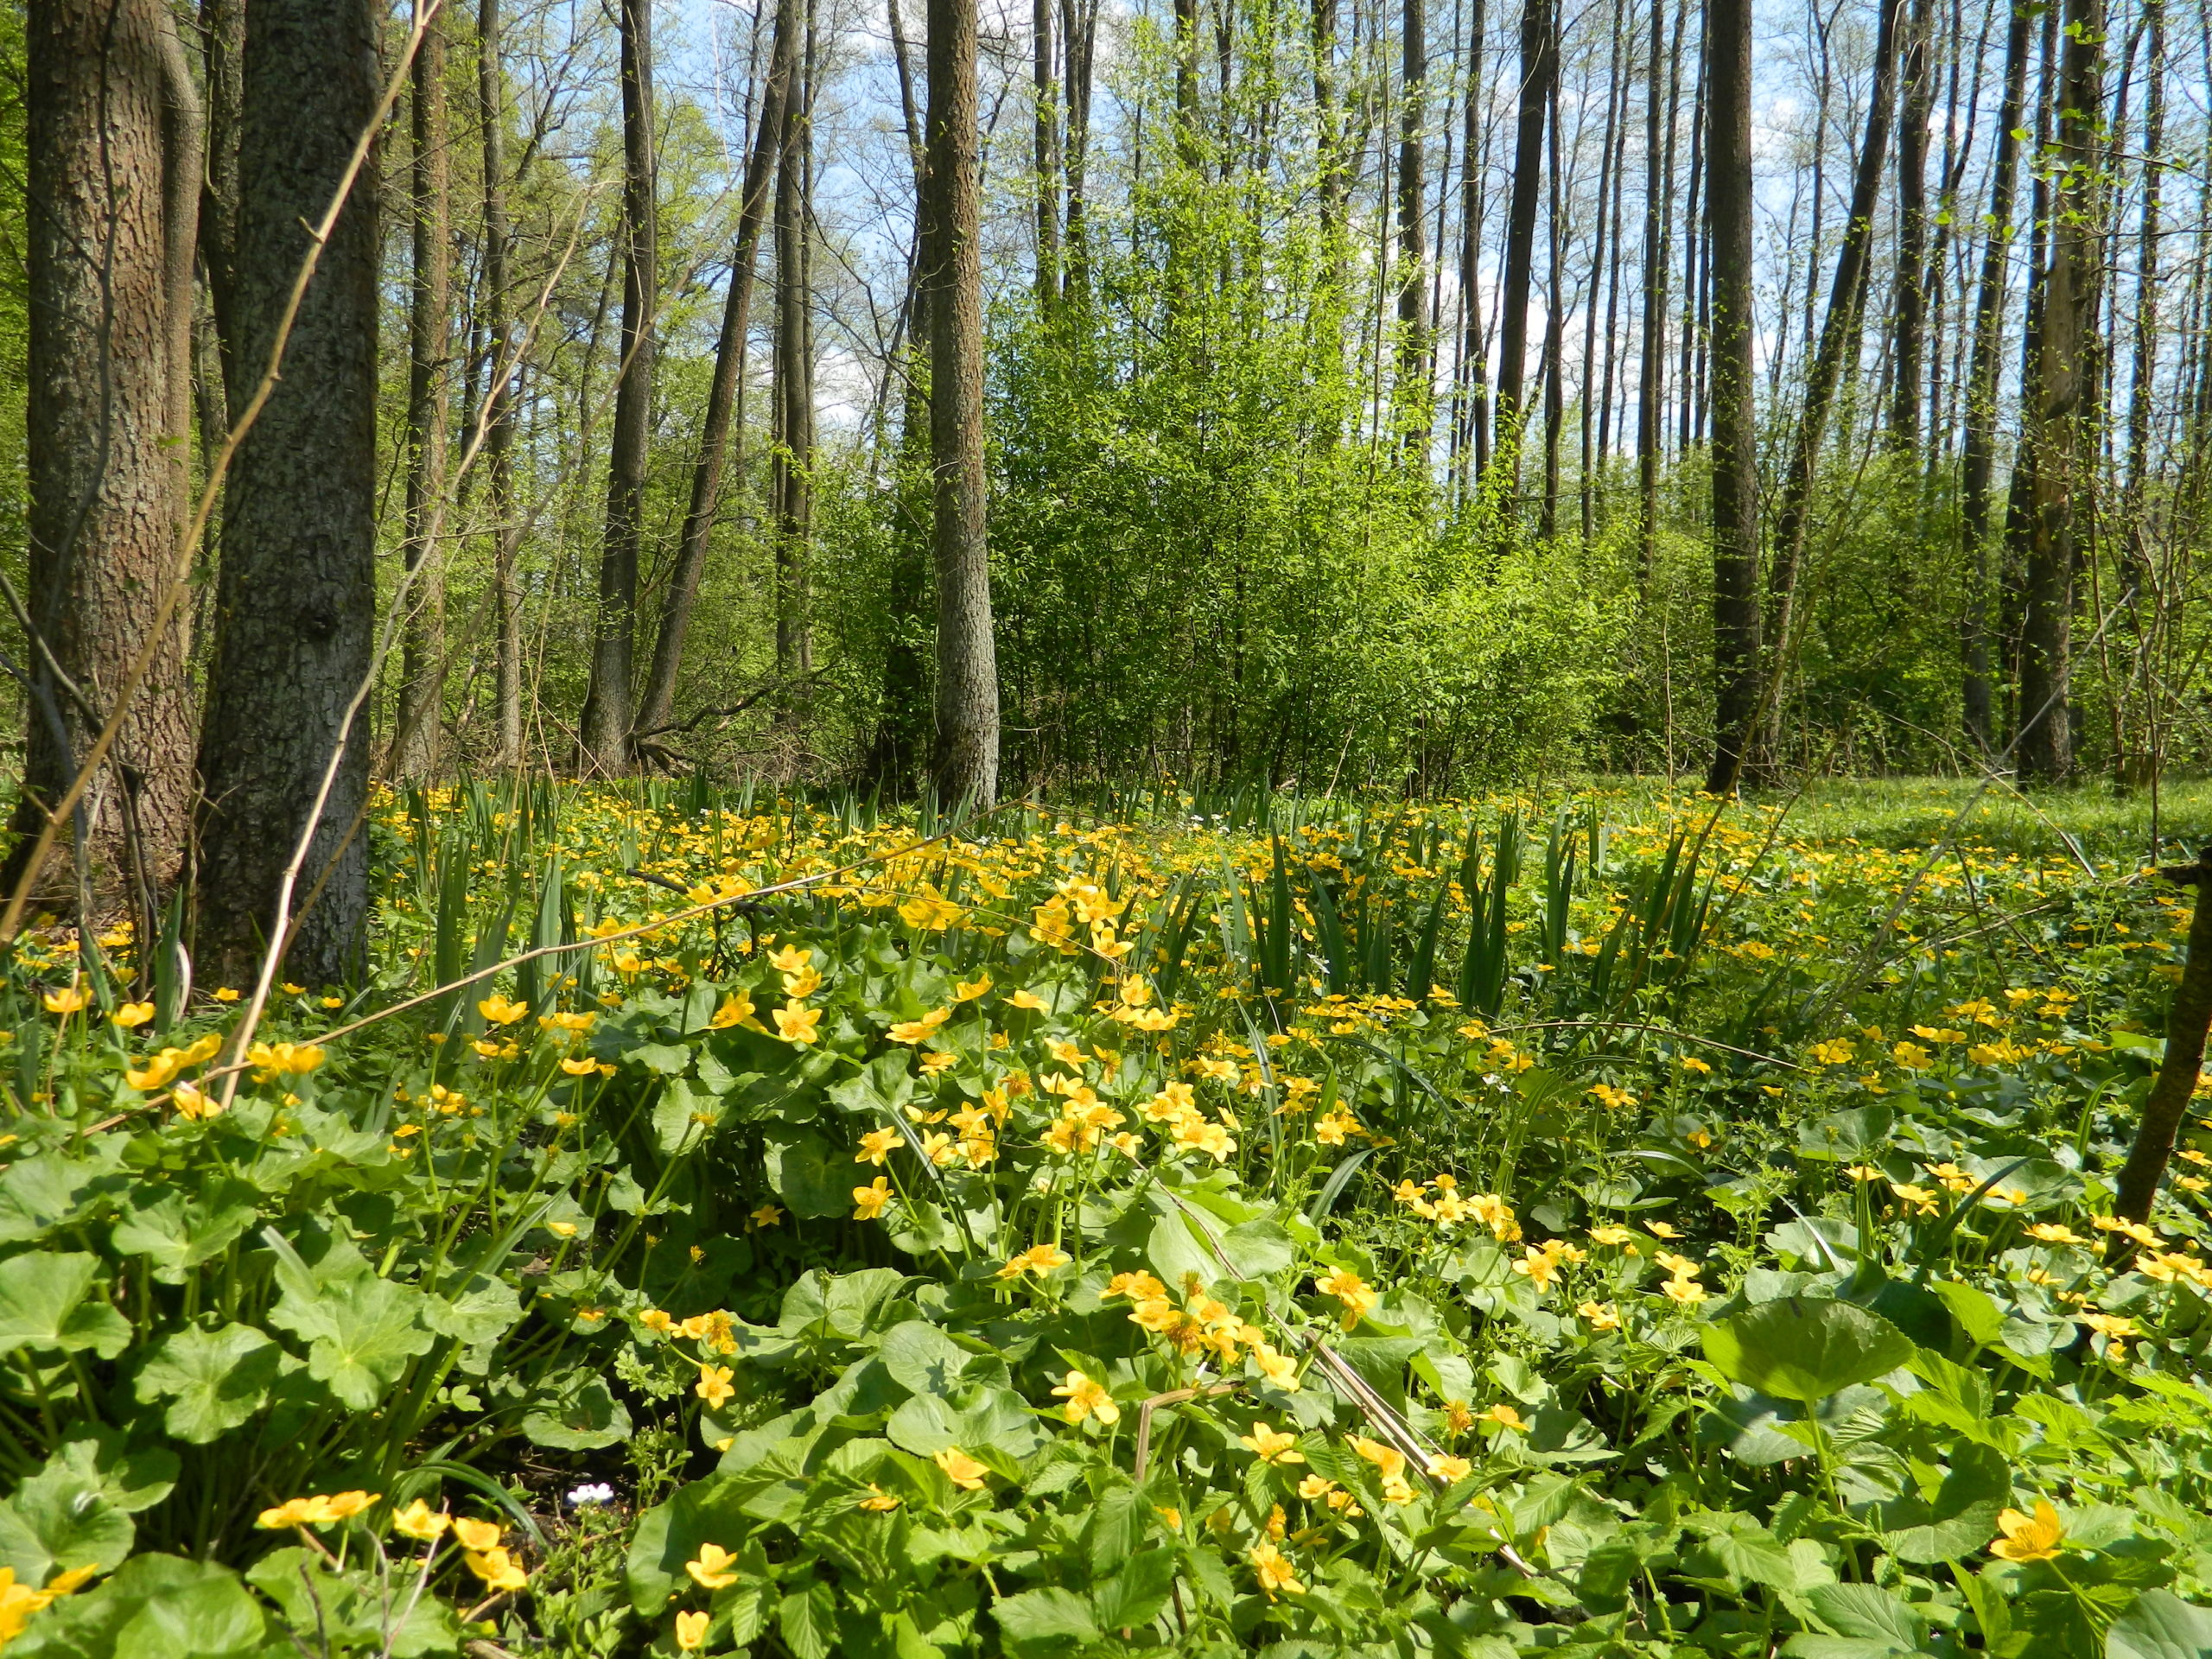 Wiosenna puszcza. / A spring forest.